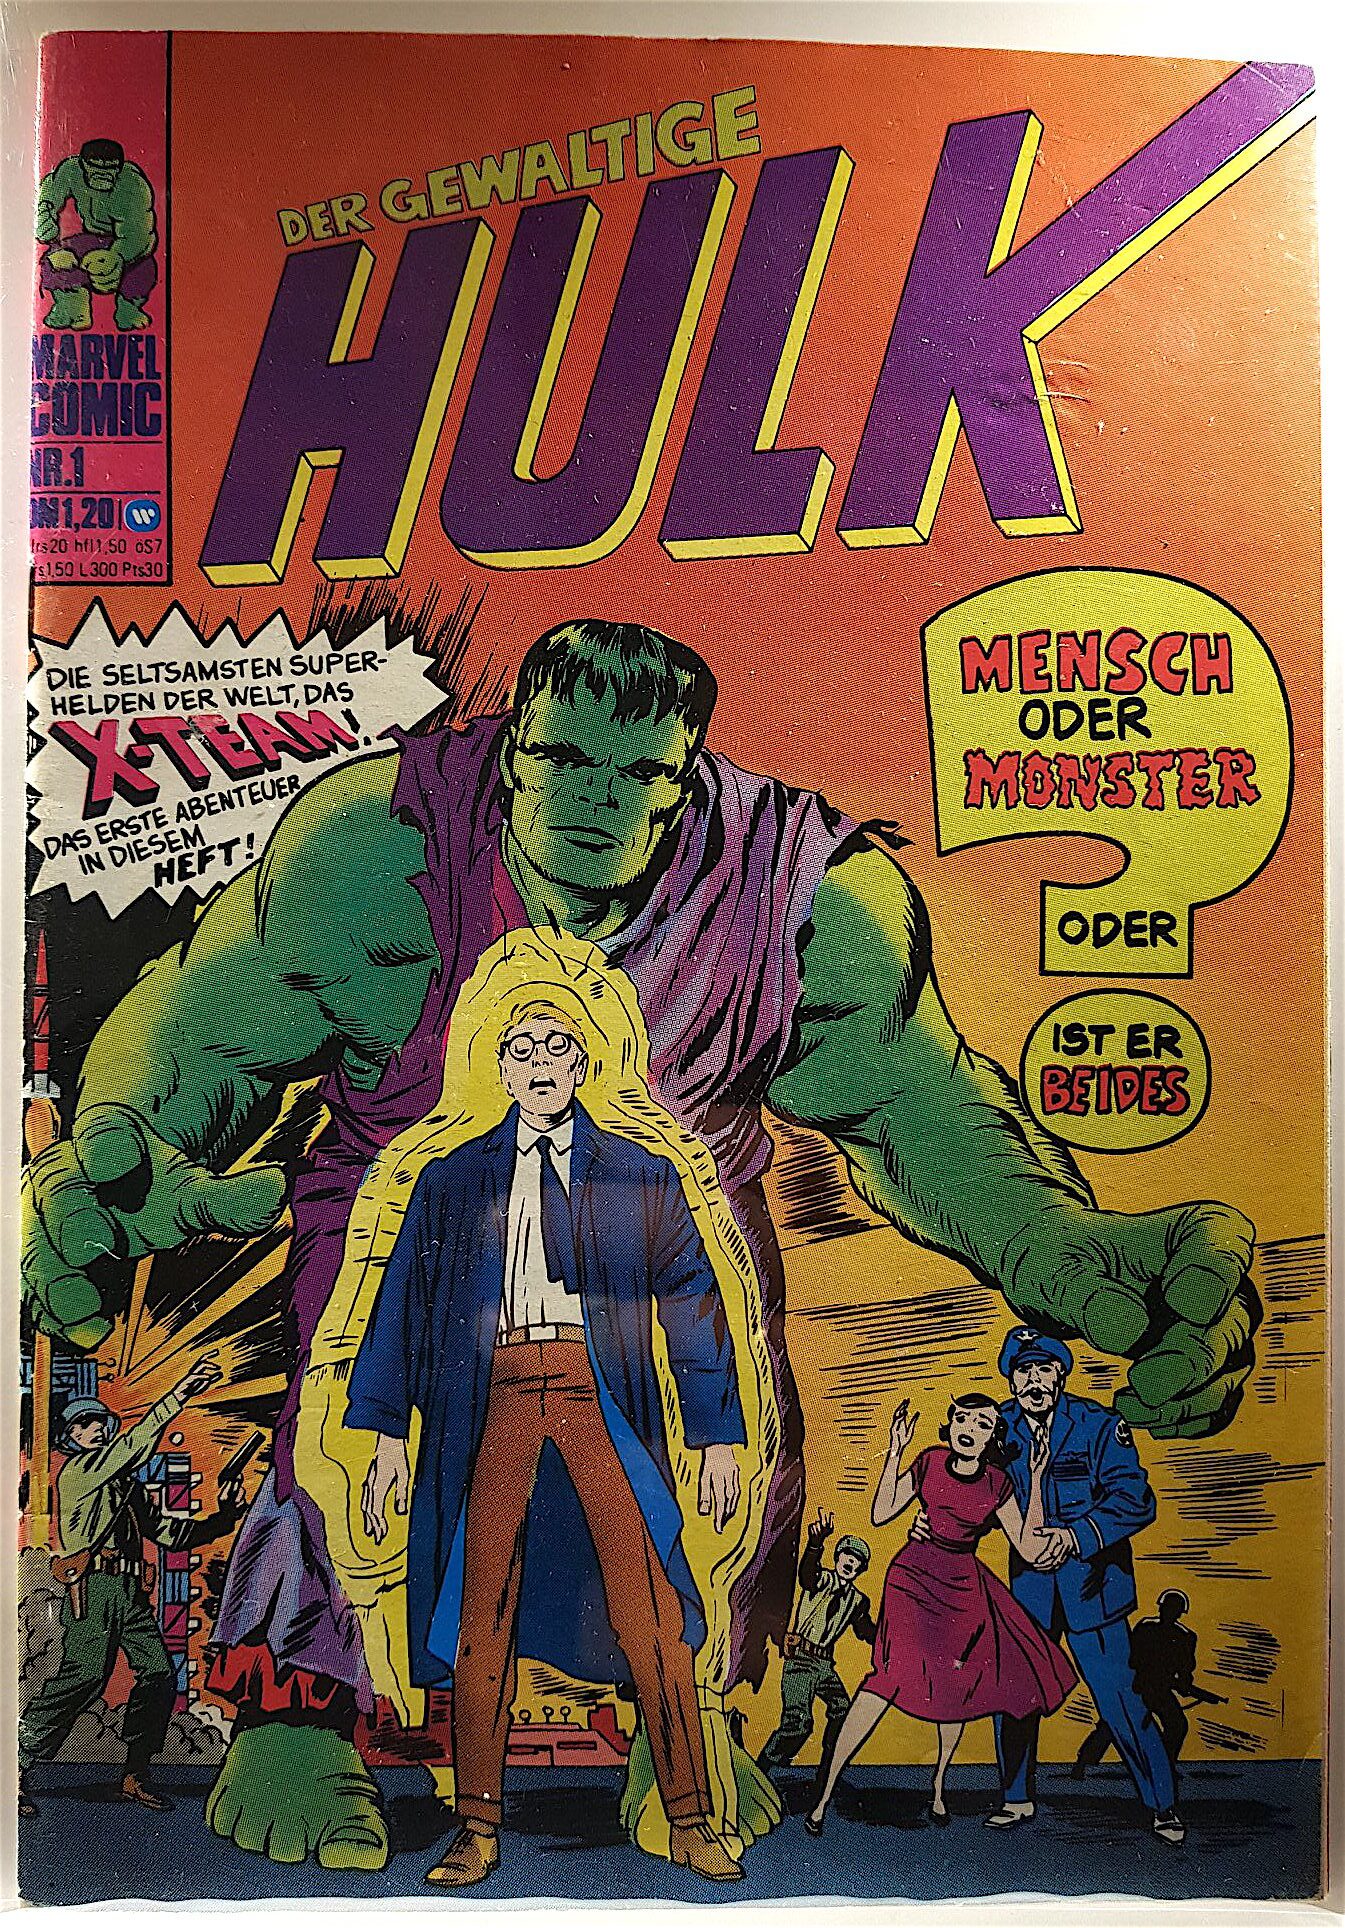 Okładka niemieckiego wydania Hulk Nr. 1 z Hulkiem już pokolorowanym na zielono